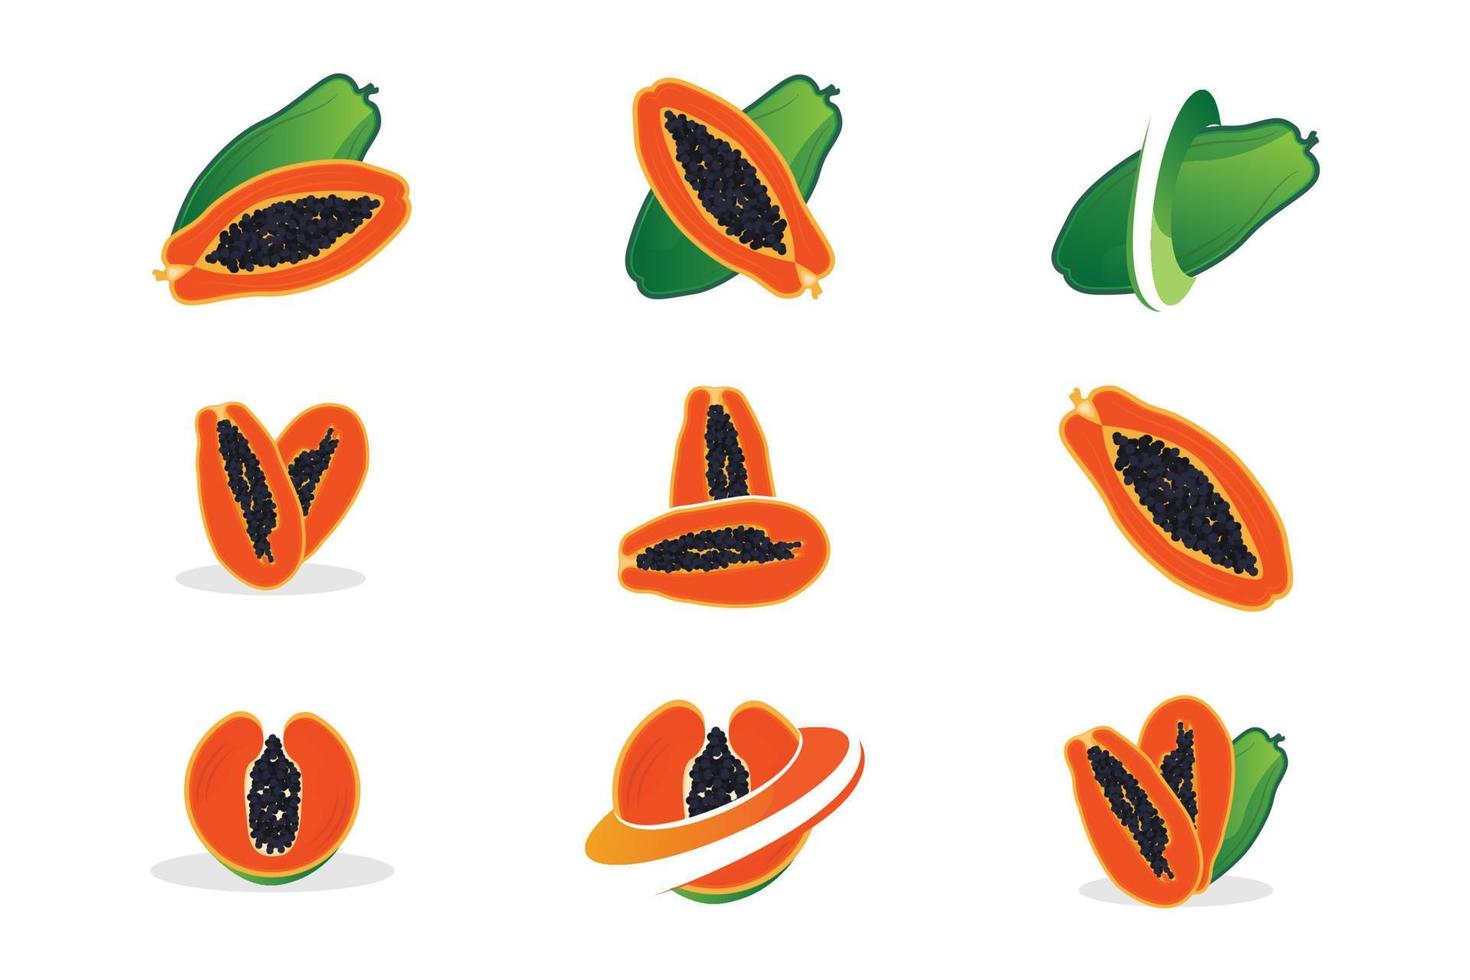 design de logotipo de mamão, vetor de frutas vitamínicas, ícone de ilustração de marca de produtos de frutas